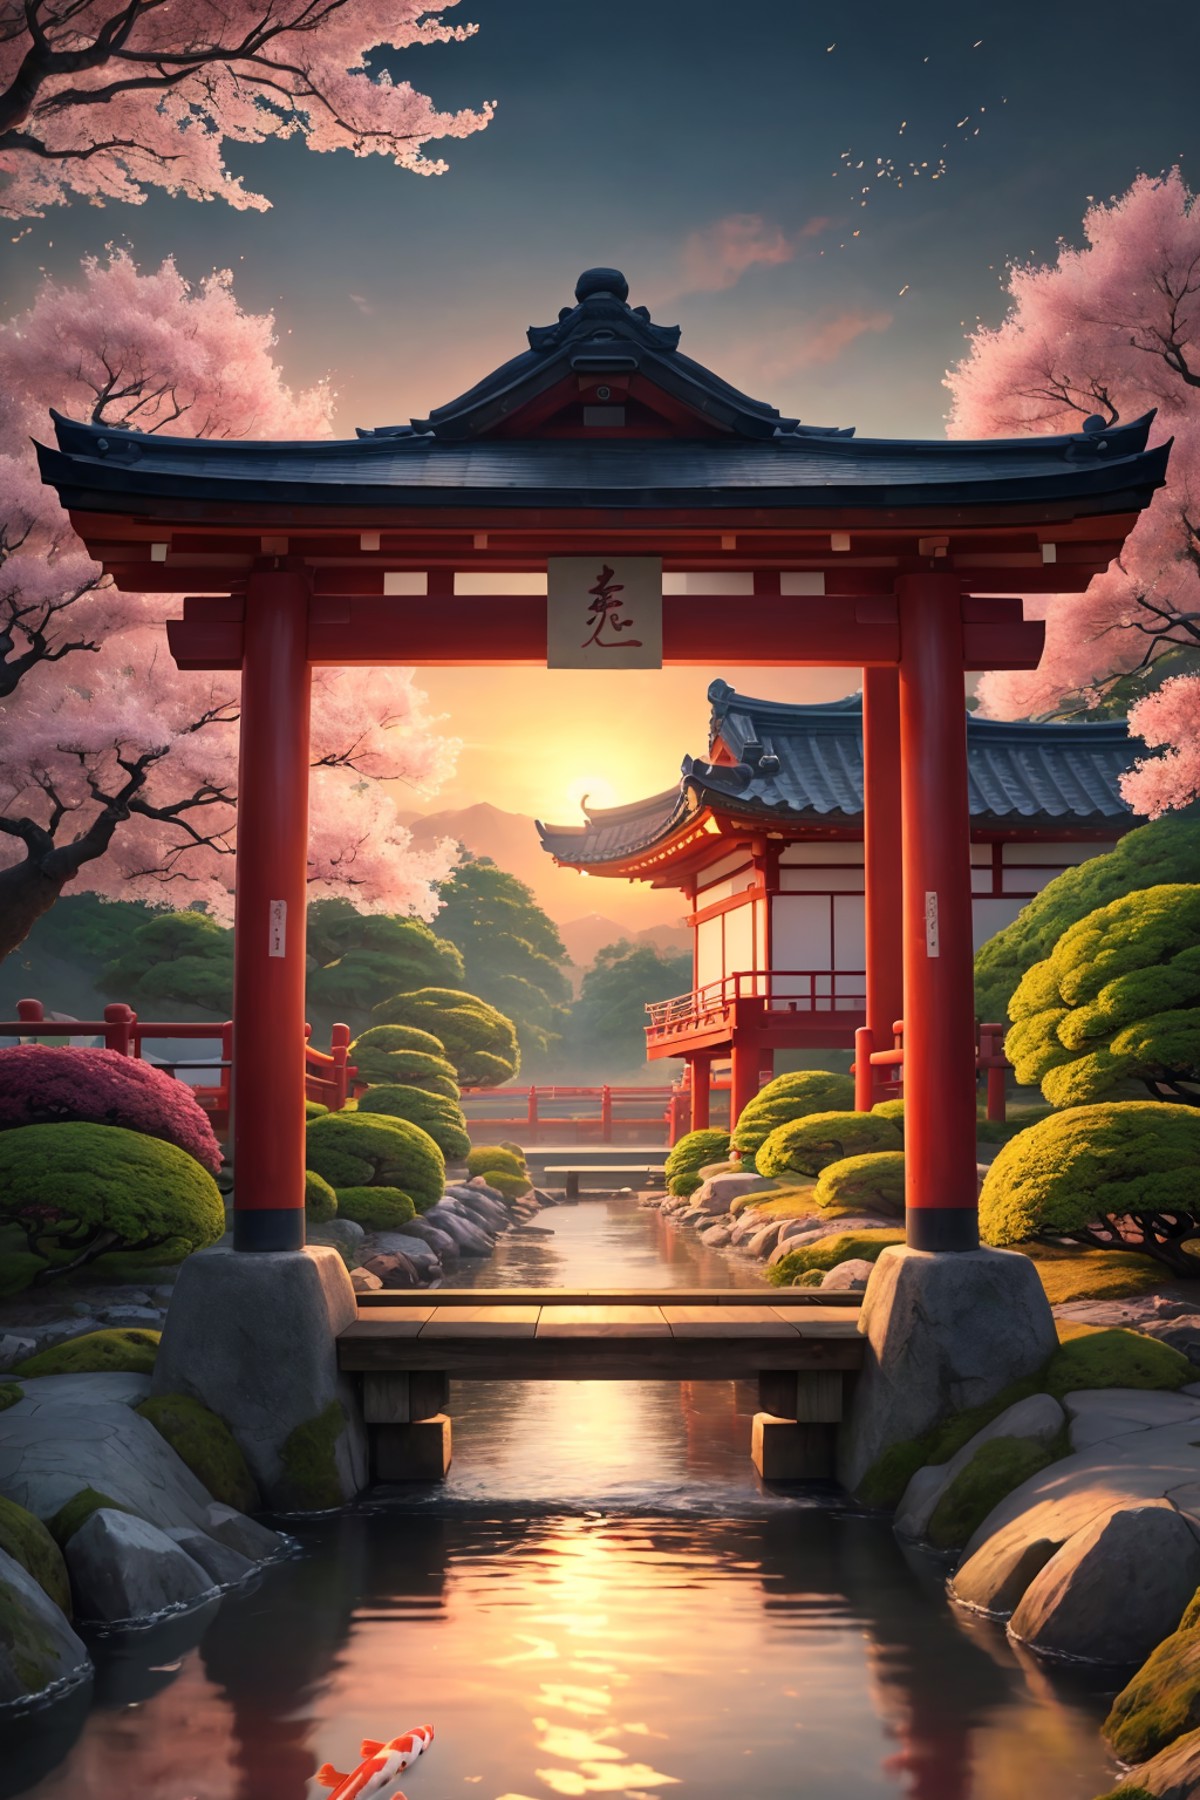 (digital painting),(best quality), serene Japanese garden, cherry blossoms in full bloom, koi pond, footbridge, pagoda, Uk...